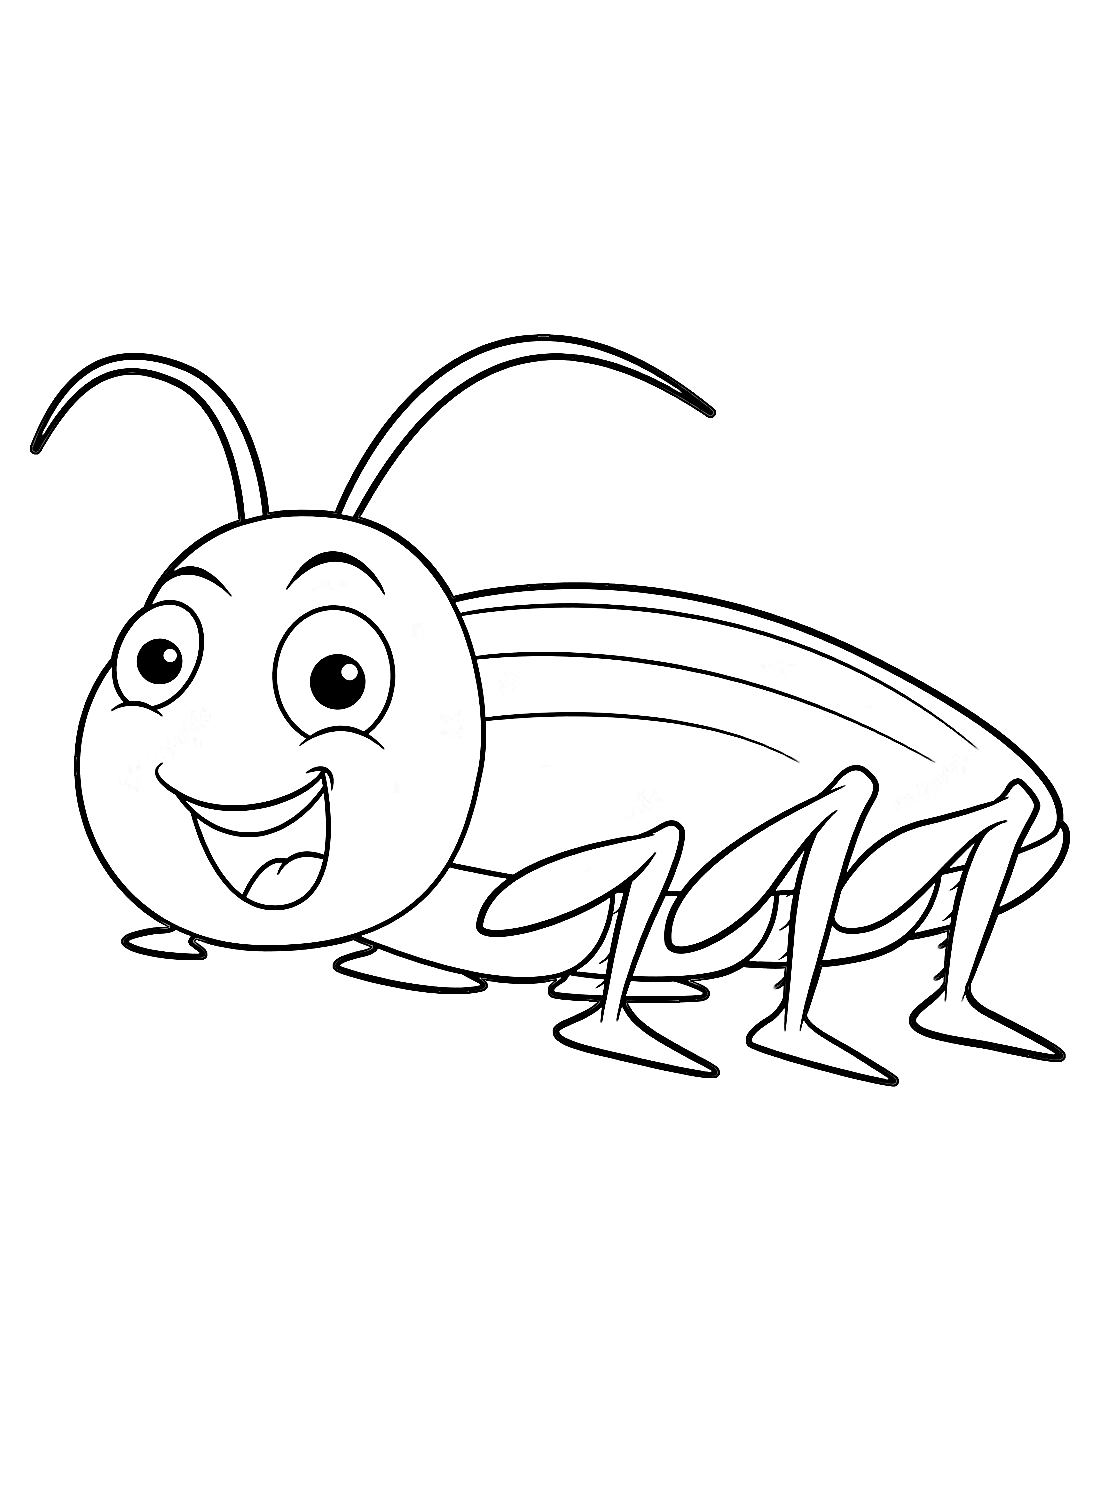 Een grappige cartoonkakkerlak van Cockroach